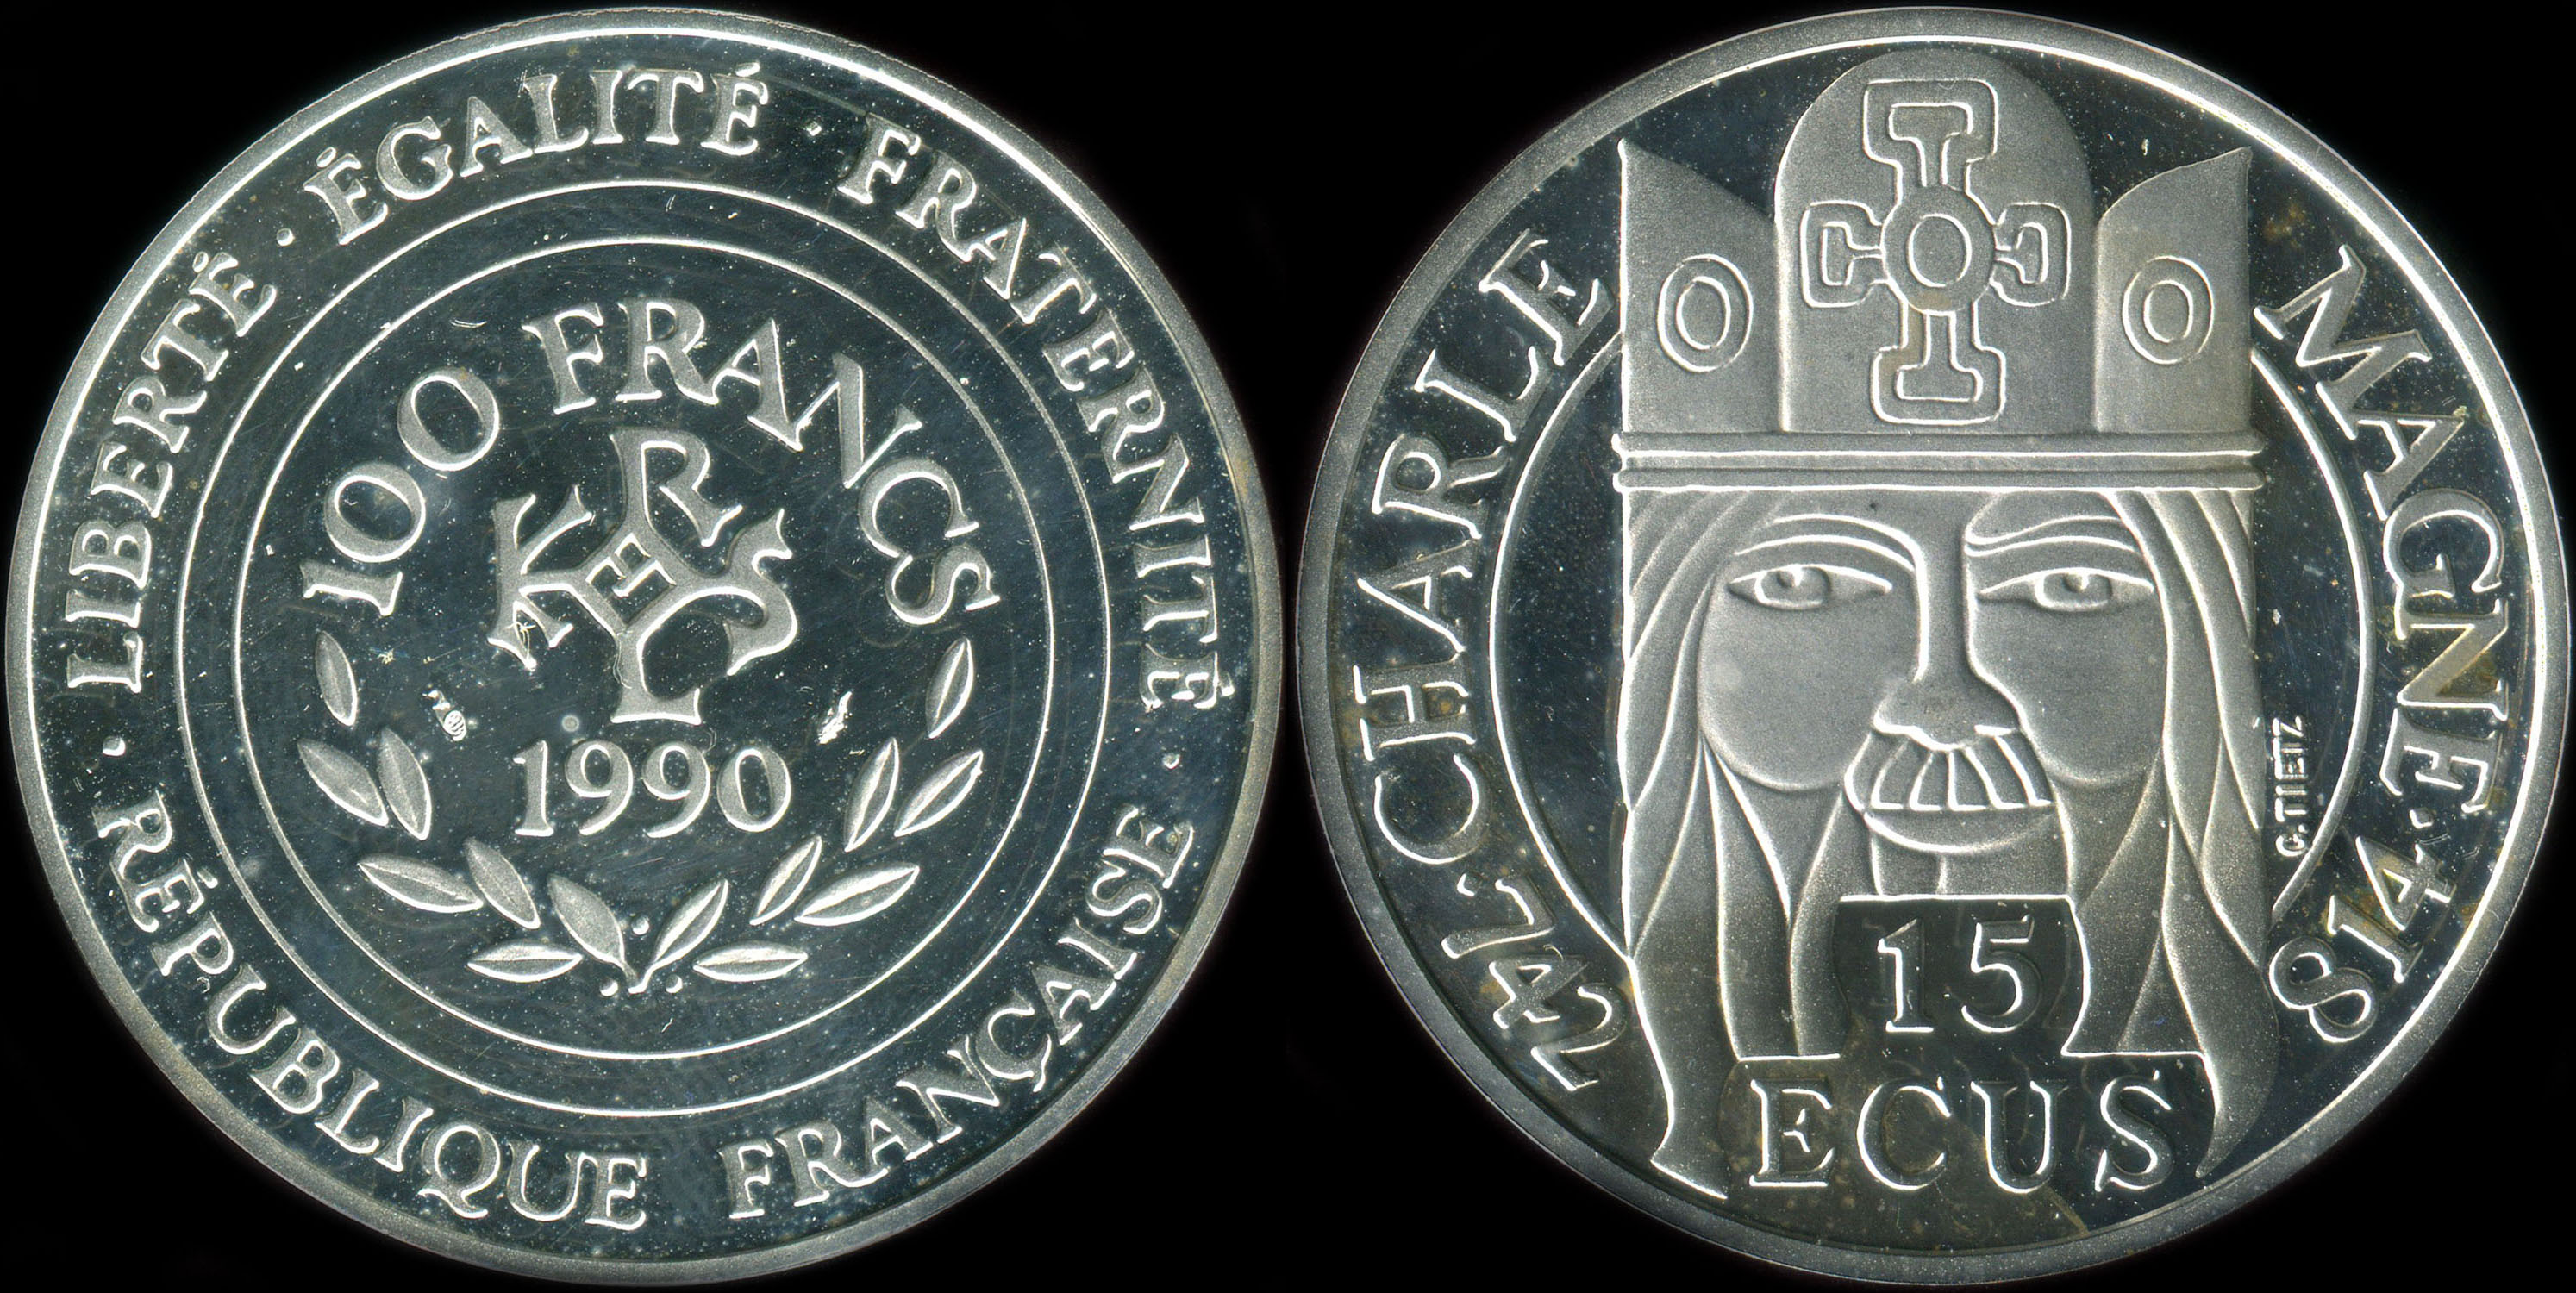 Pice de 100 francs - 15 ecus 1990 - Charlemagne 742-814